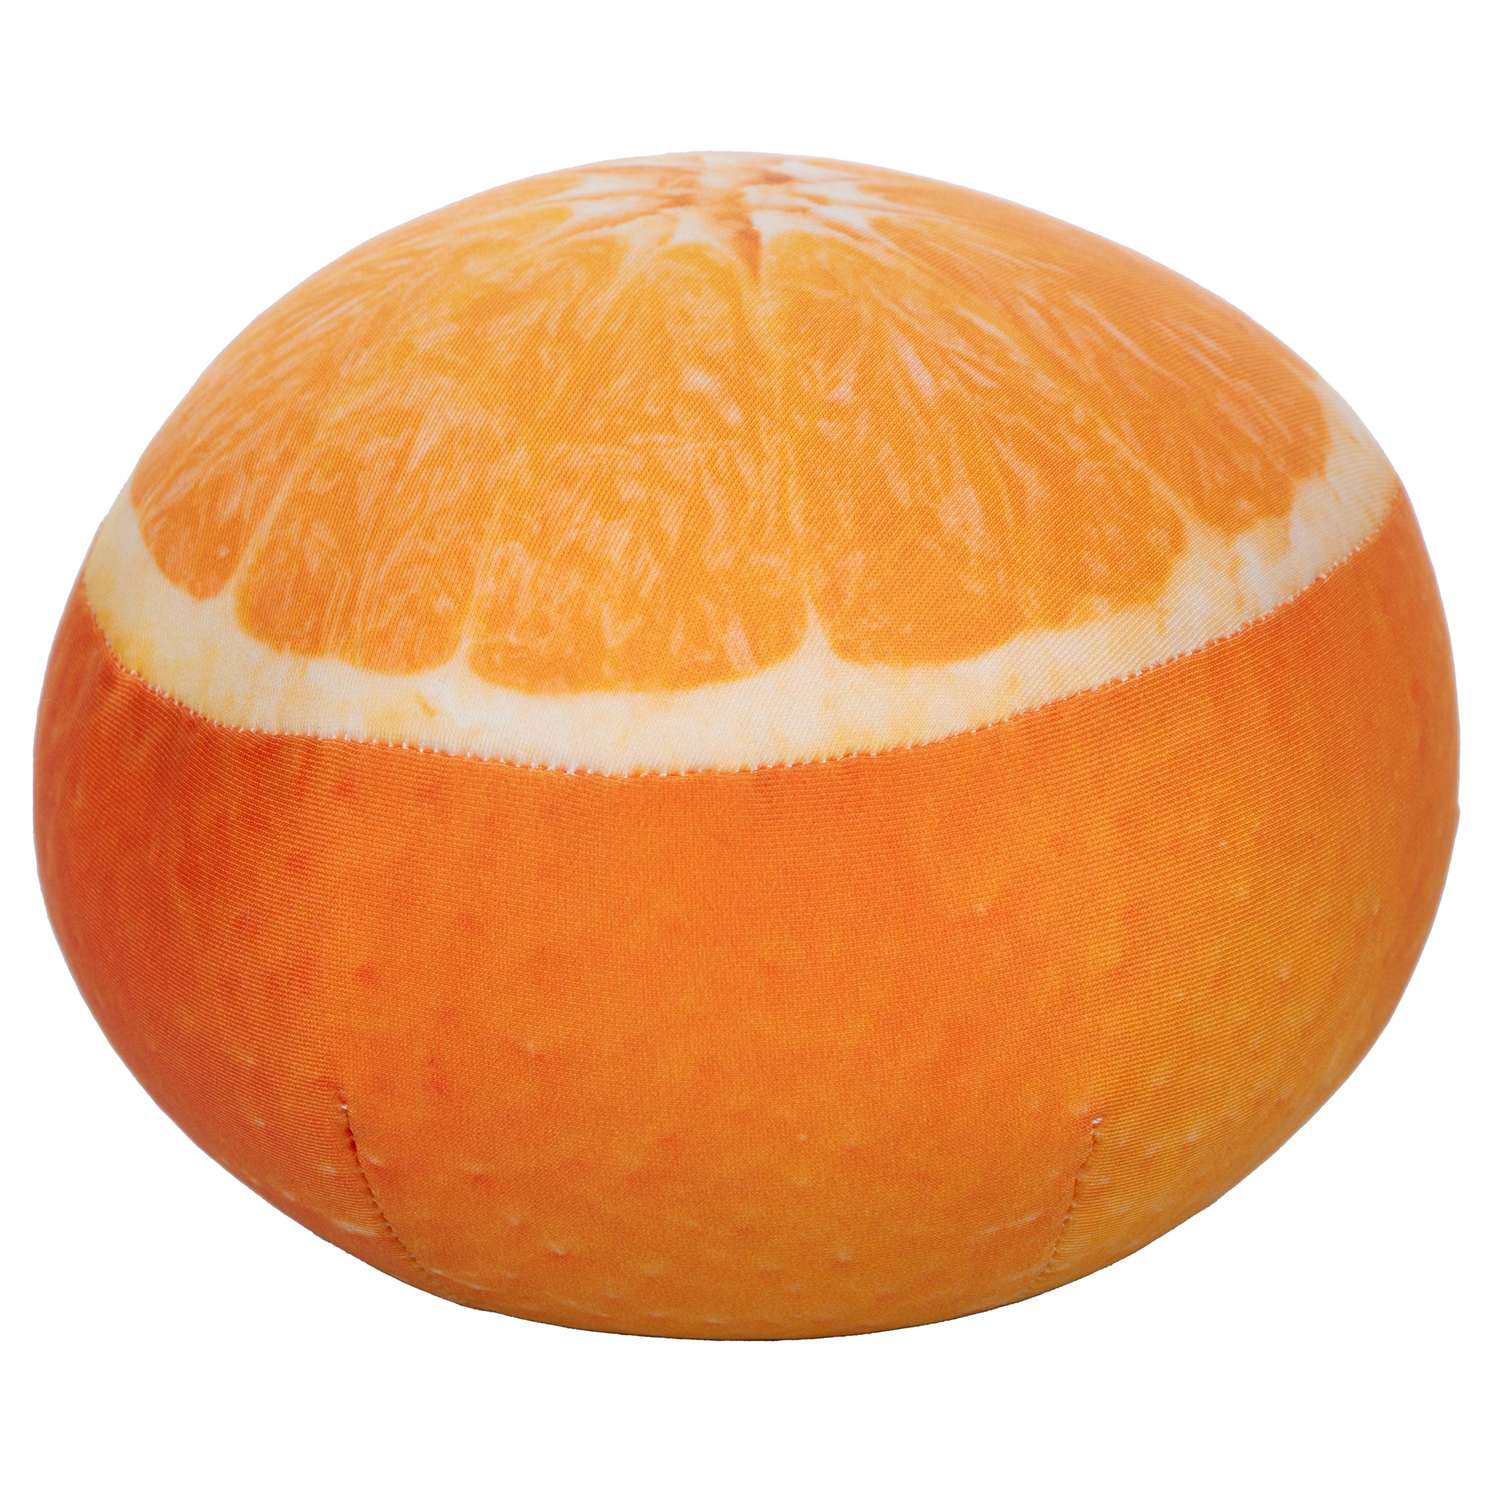 Игрушка мягконабивная Tallula Апельсин 12 см - фото 9